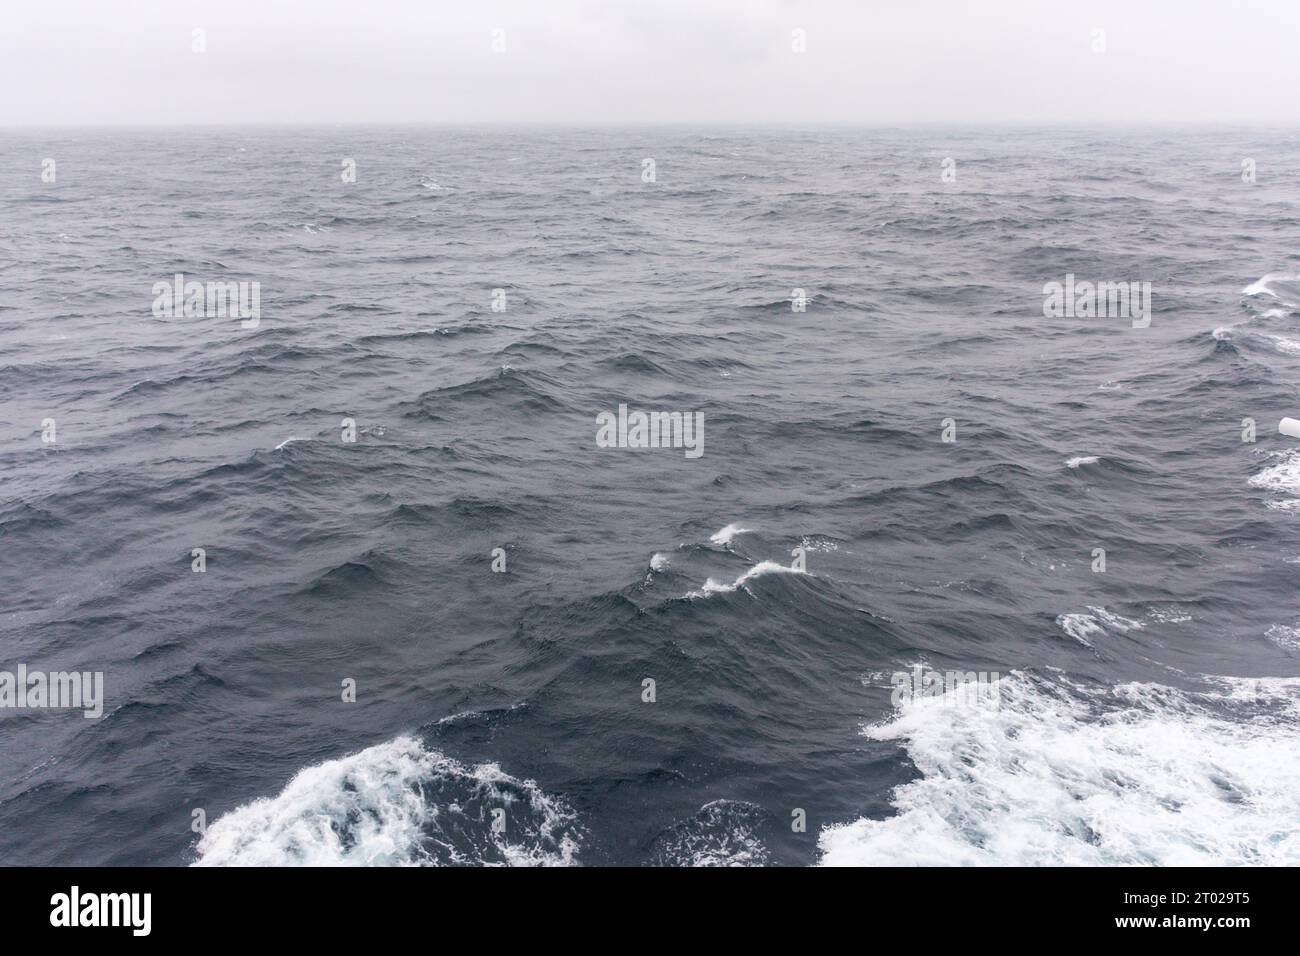 Mer agitée dans le golfe de Gascogne du navire de croisière Royal Caribbean 'Anthem of the Seas', mer Celtique, Europe Banque D'Images